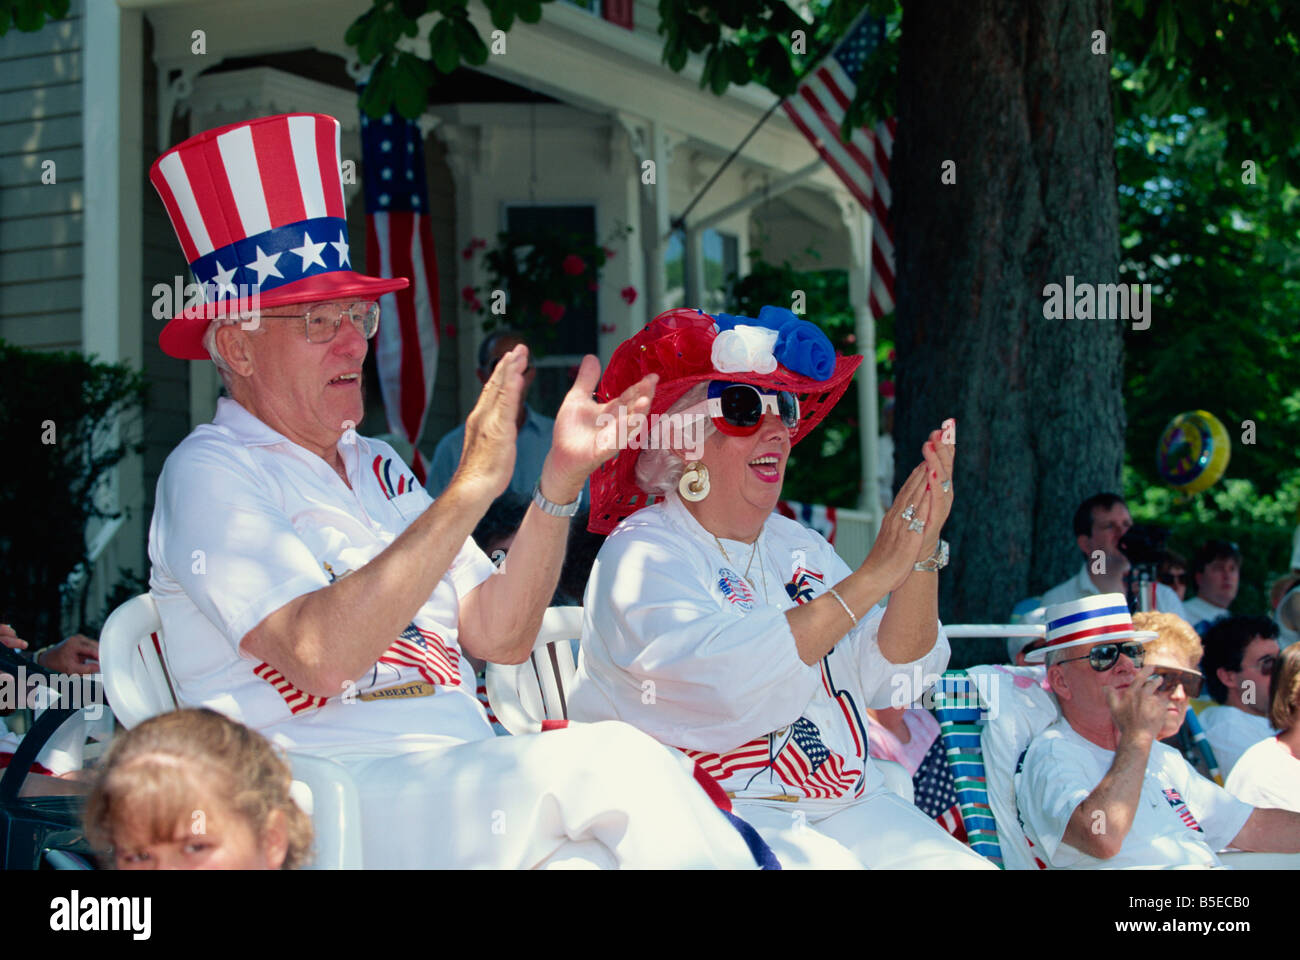 Les gens applaudissent passant 4 juillet parade, Rhode Island, New England, USA, Amérique du Nord Banque D'Images